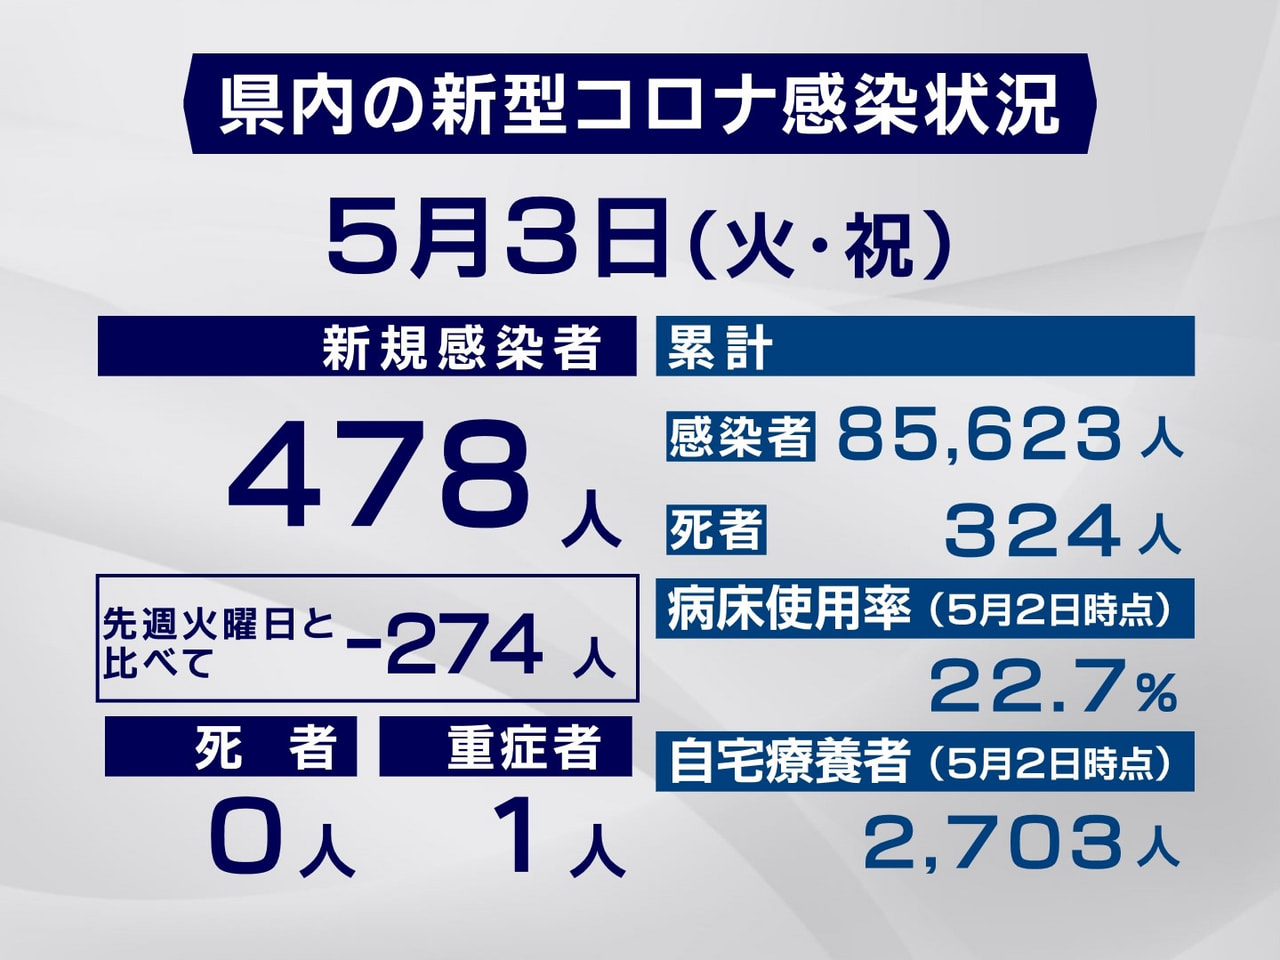 岐阜県は３日、新型コロナウイルスの新規感染者が４７８人確認されたと発表しました。...